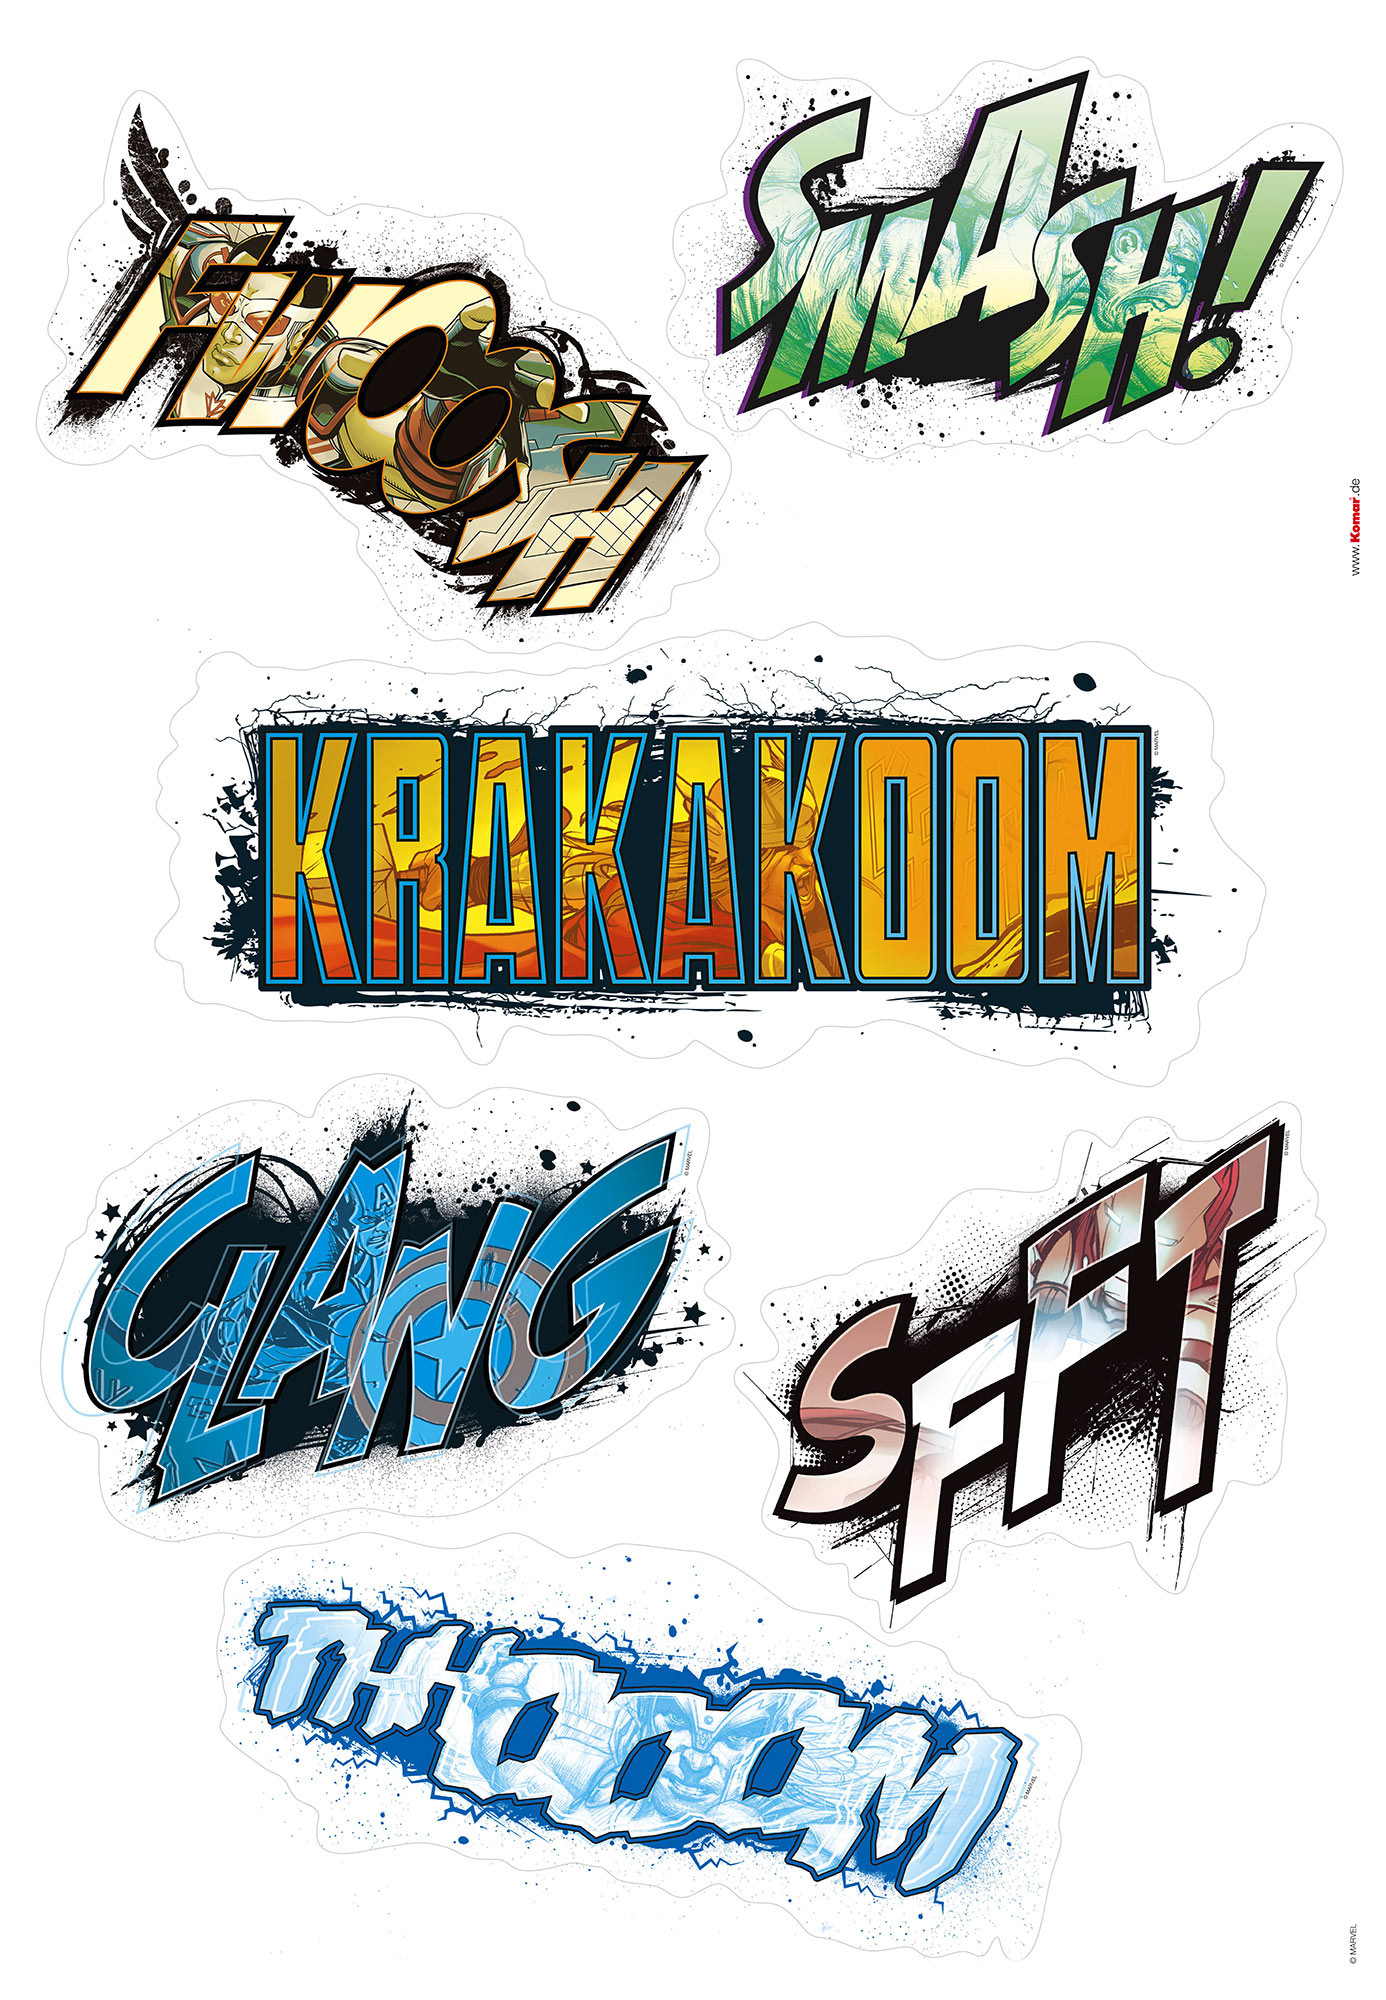 Sticker mural Avengers Plates de Komar®, Marvel